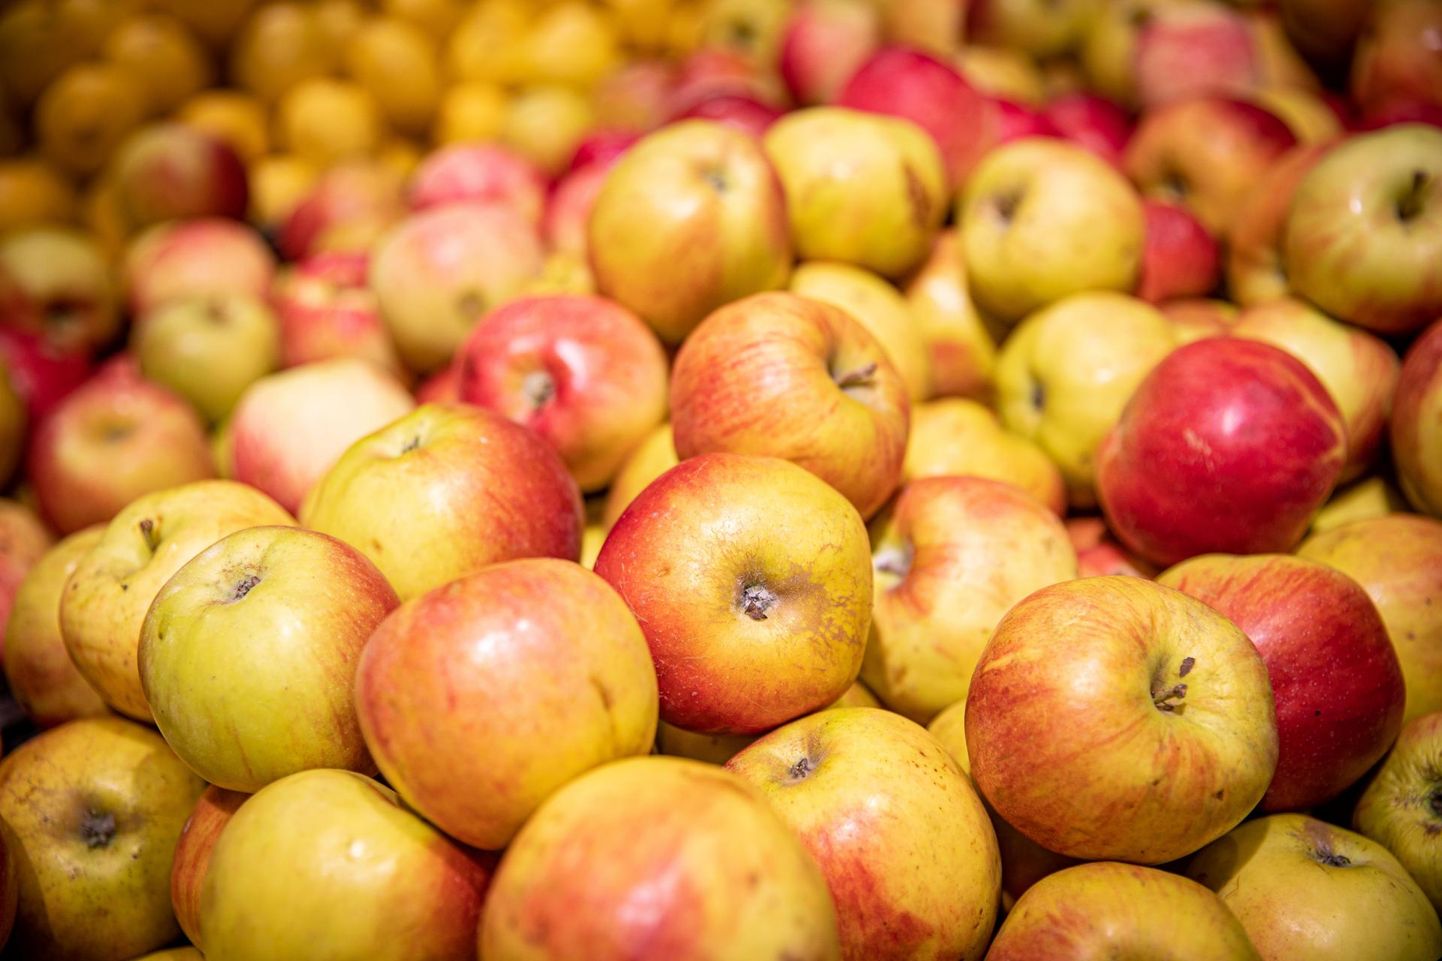 Hoidmiseks valitud õunu ei tasu panna kartulikeldrisse, kus kipub õuntele tulema mullamaitse. 